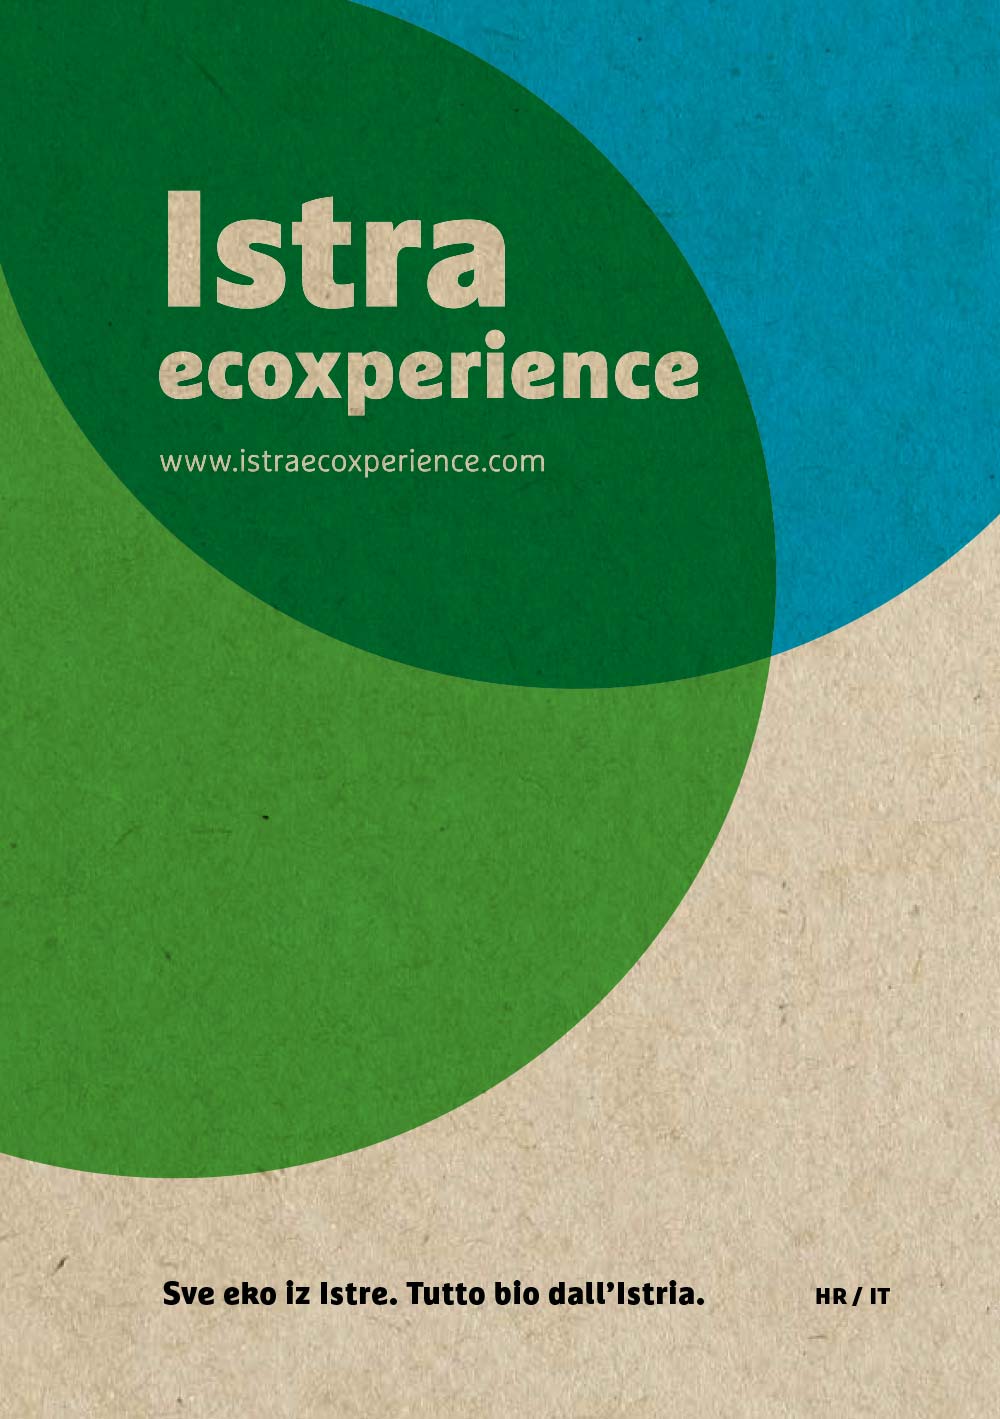 Istra Ecoxperience